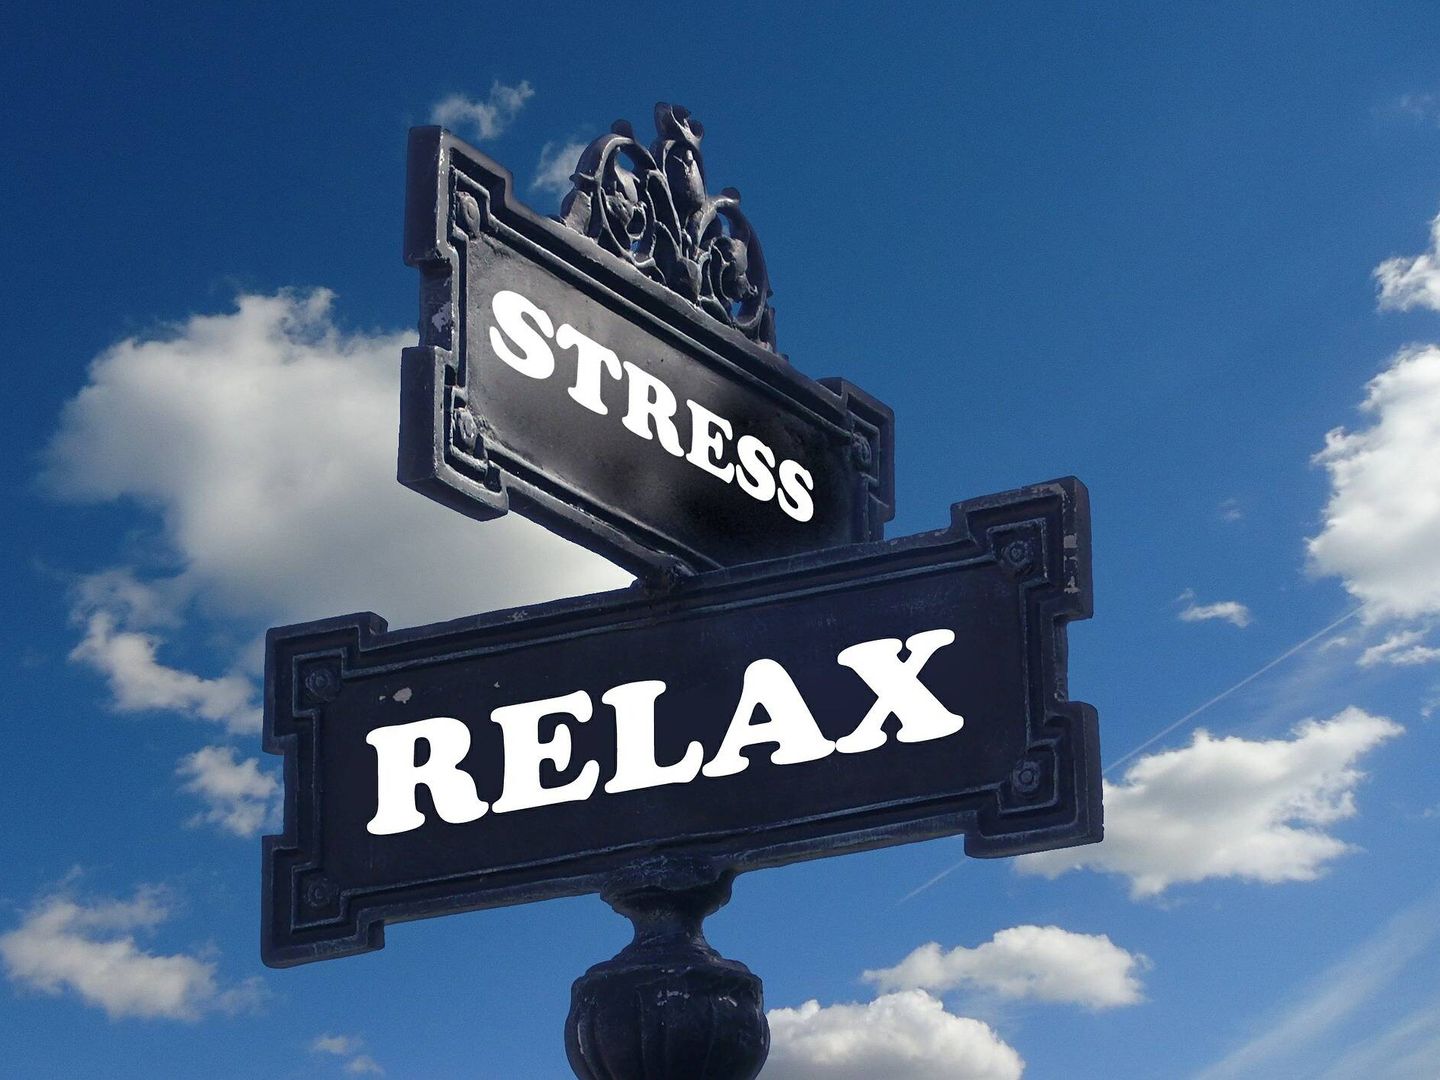 Uno de los beneficios más sorprendentes del estrés es que puede ayudar a construir relaciones interpersonales, que son clave para la salud en general. (Pixabay)